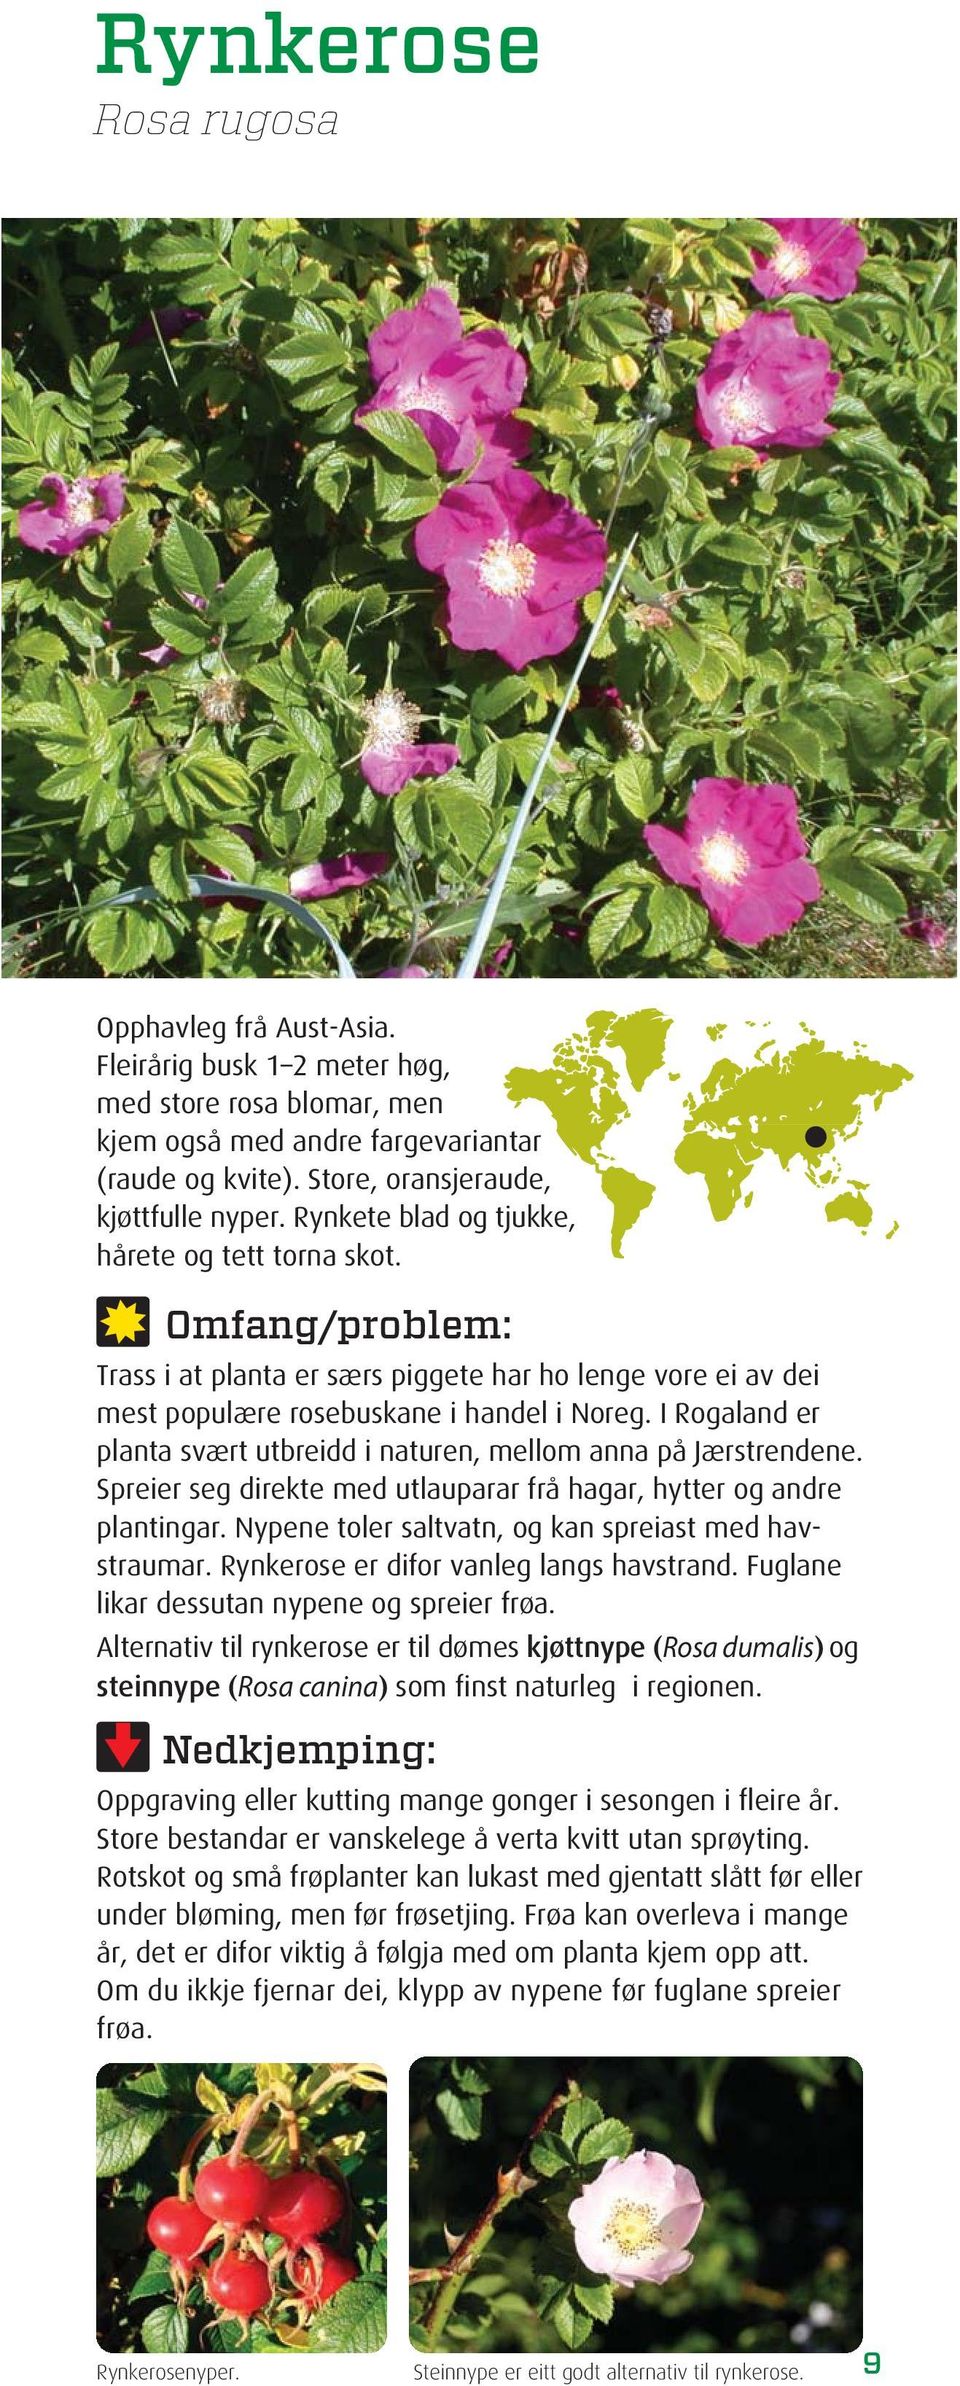 I Rogaland er planta svært utbreidd i naturen, mellom anna på Jærstrendene. Spreier seg direkte med utlauparar frå hagar, hytter og andre plantingar.